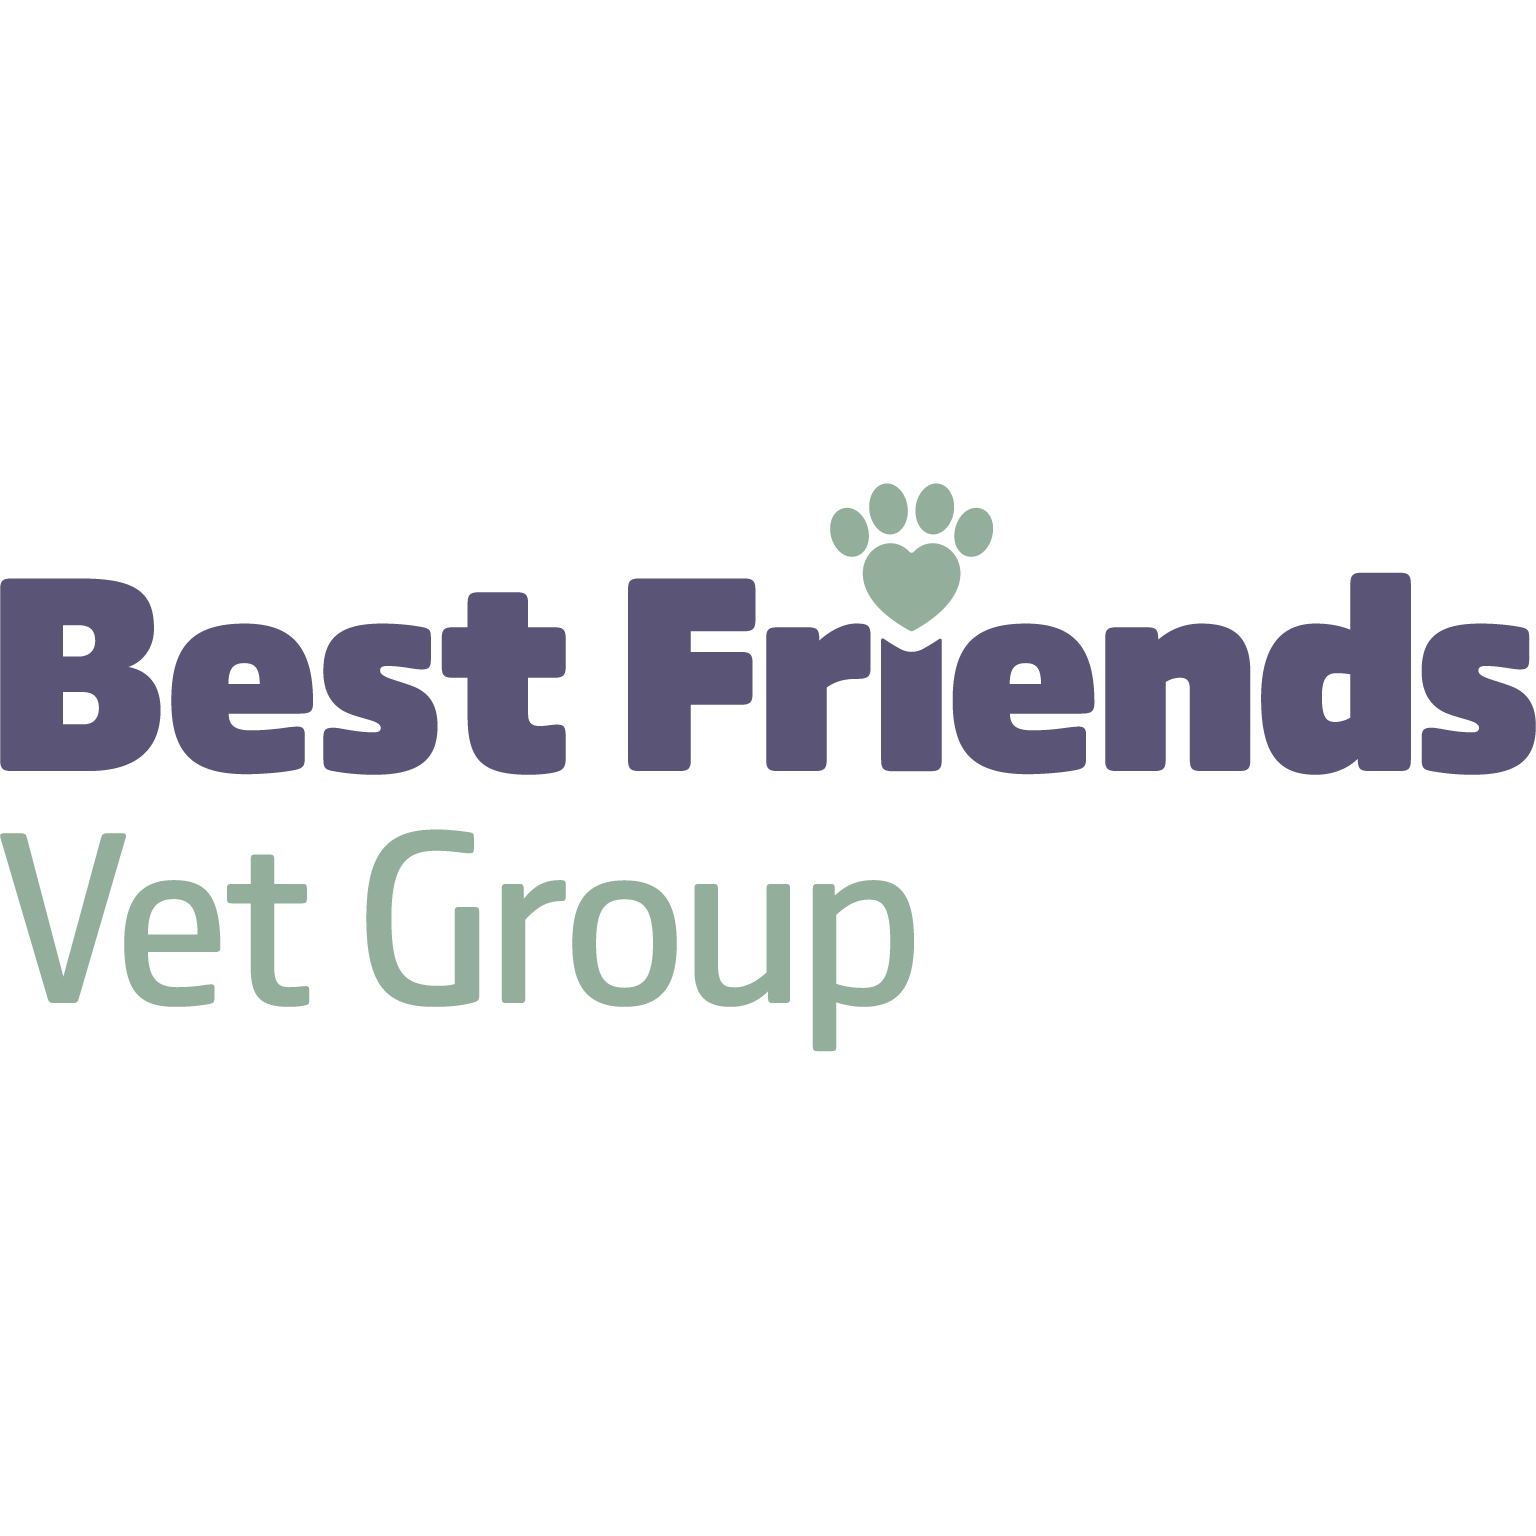 Best Friends Vet Group, Wisbech - Wisbech, Cambridgeshire PE13 1NF - 01945 581190 | ShowMeLocal.com